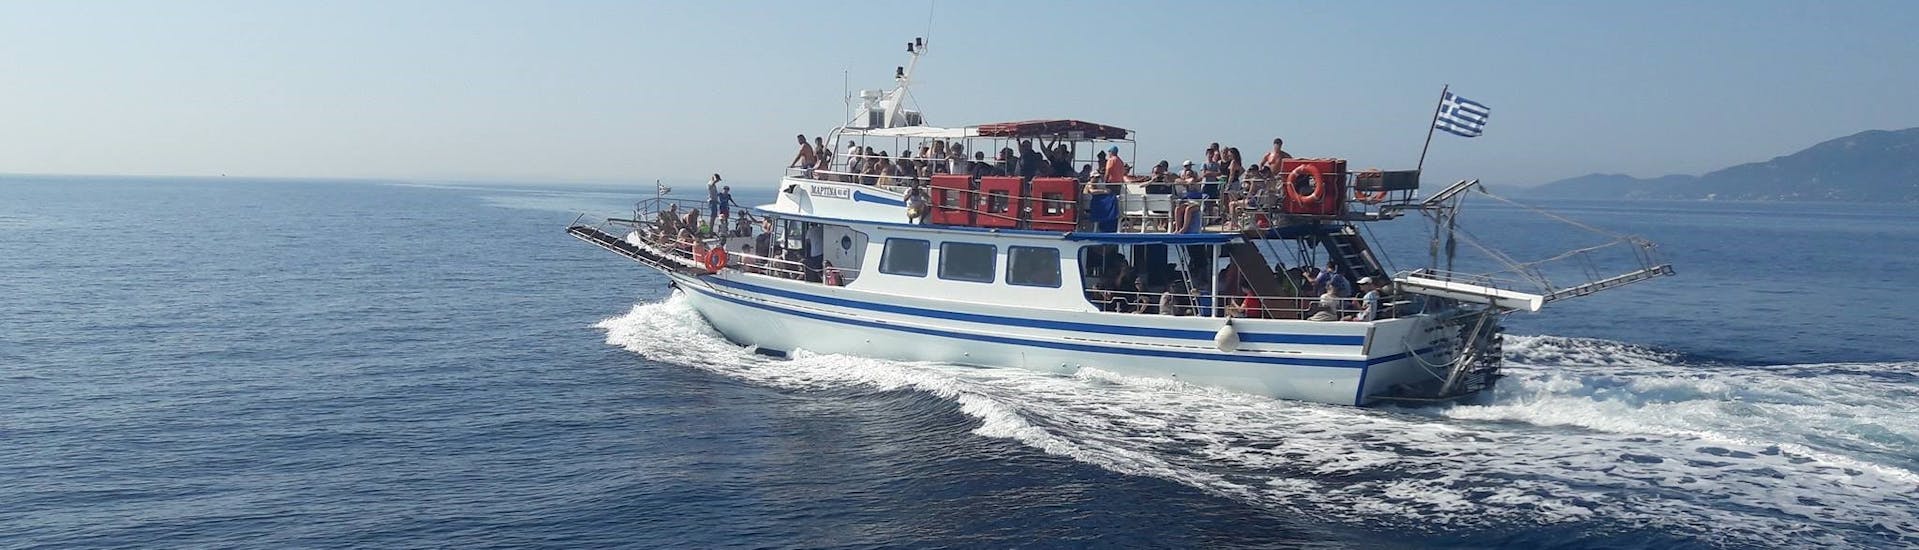 Bootstour von Korfu Stadt - Sivota mit Schwimmen & Sightseeing.